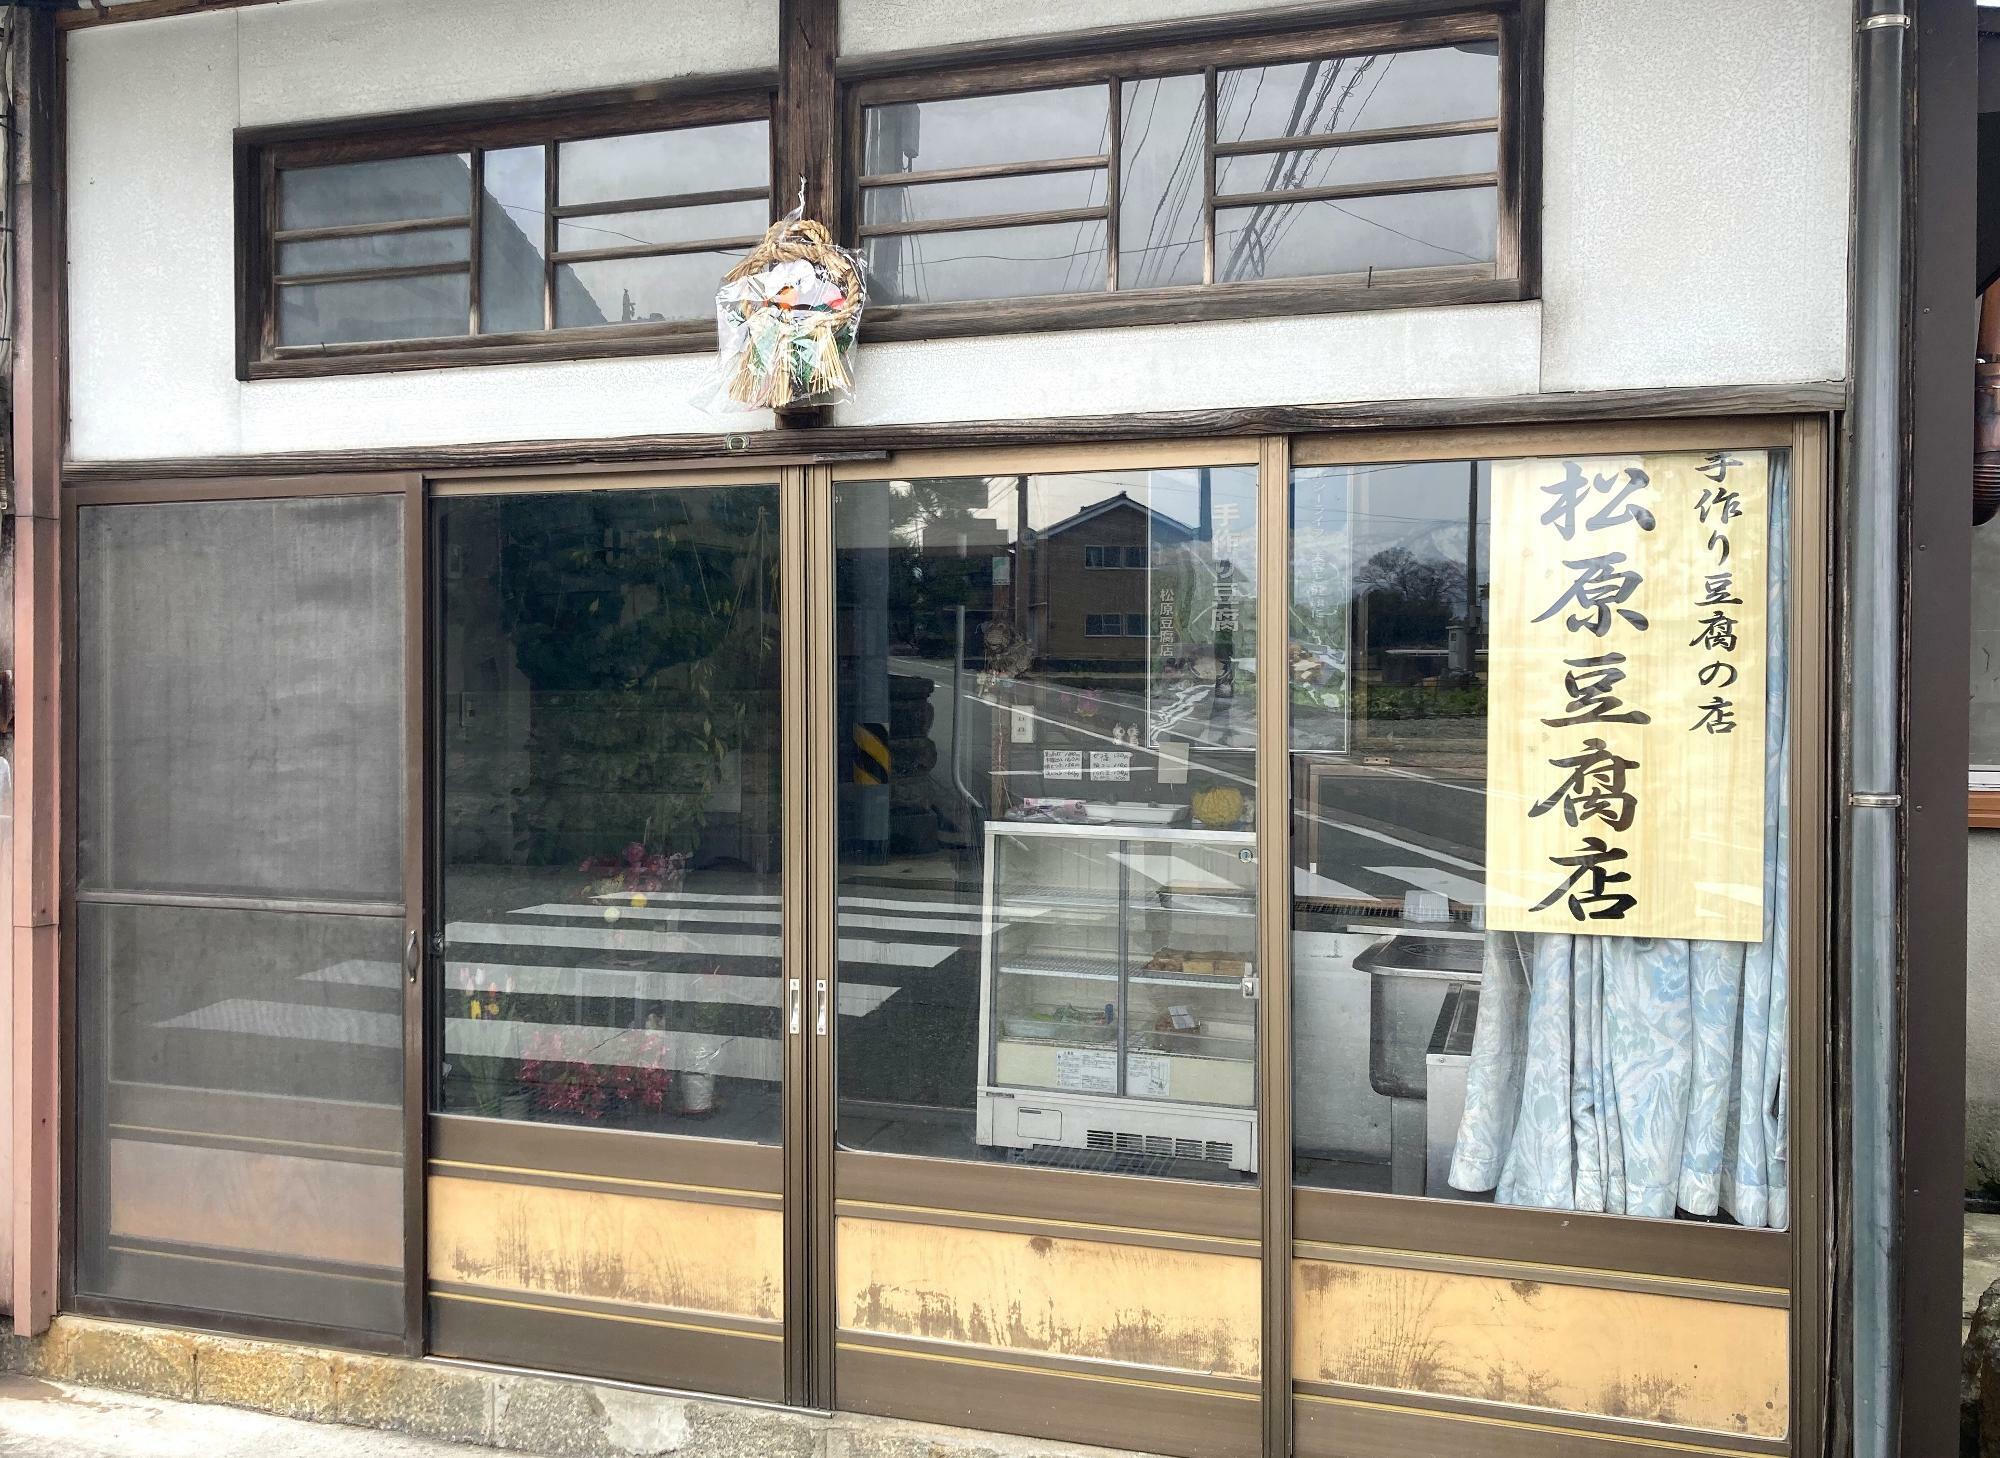 「松原豆腐店」さんの外観